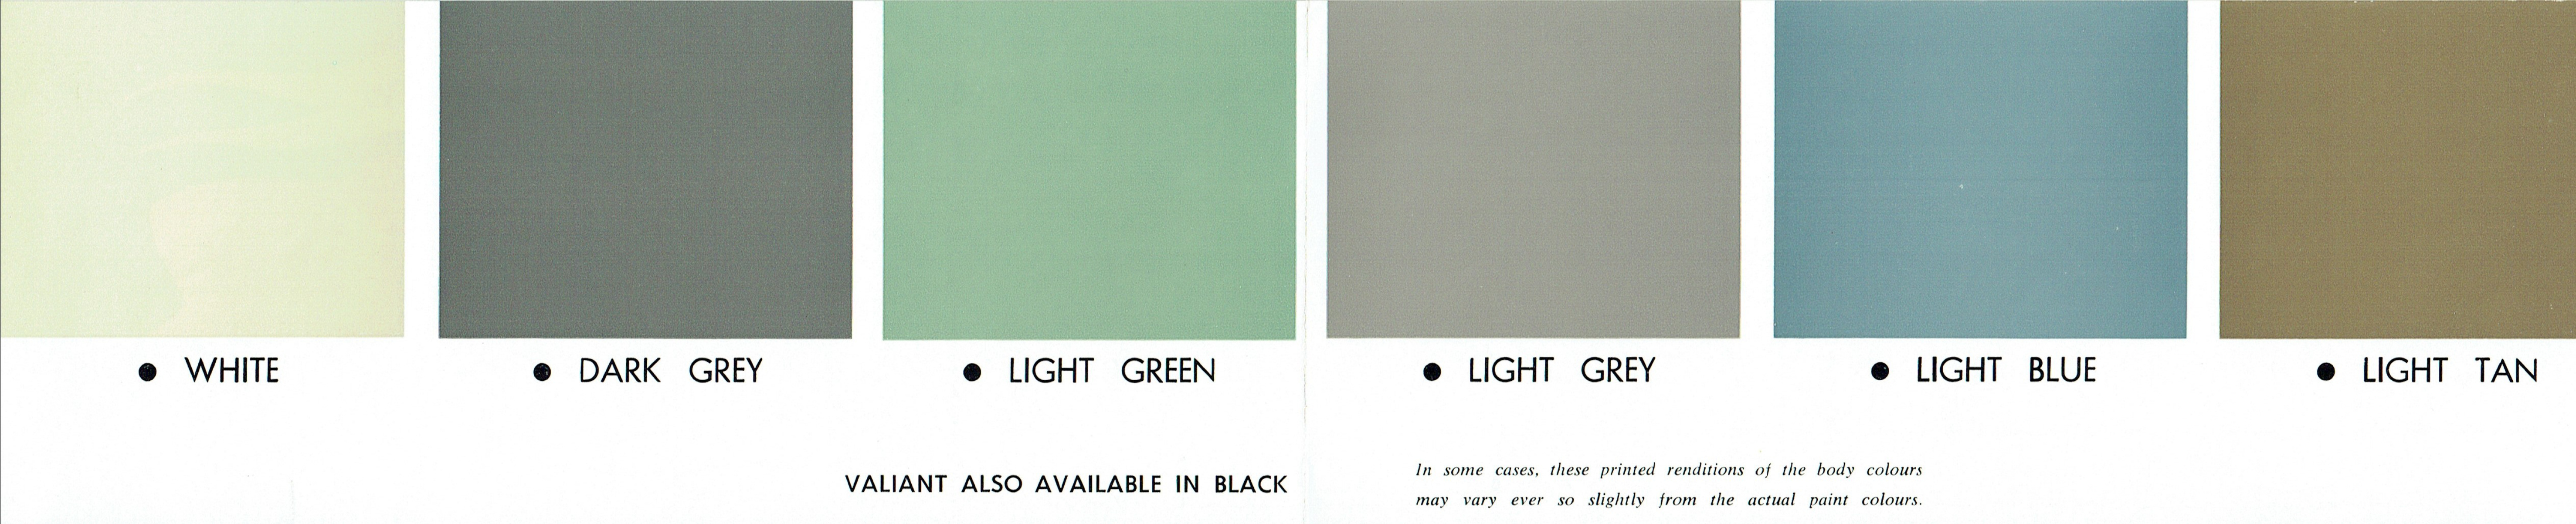 1962_Chrysler_RV1_Valiant_Colour_Chart-03-04